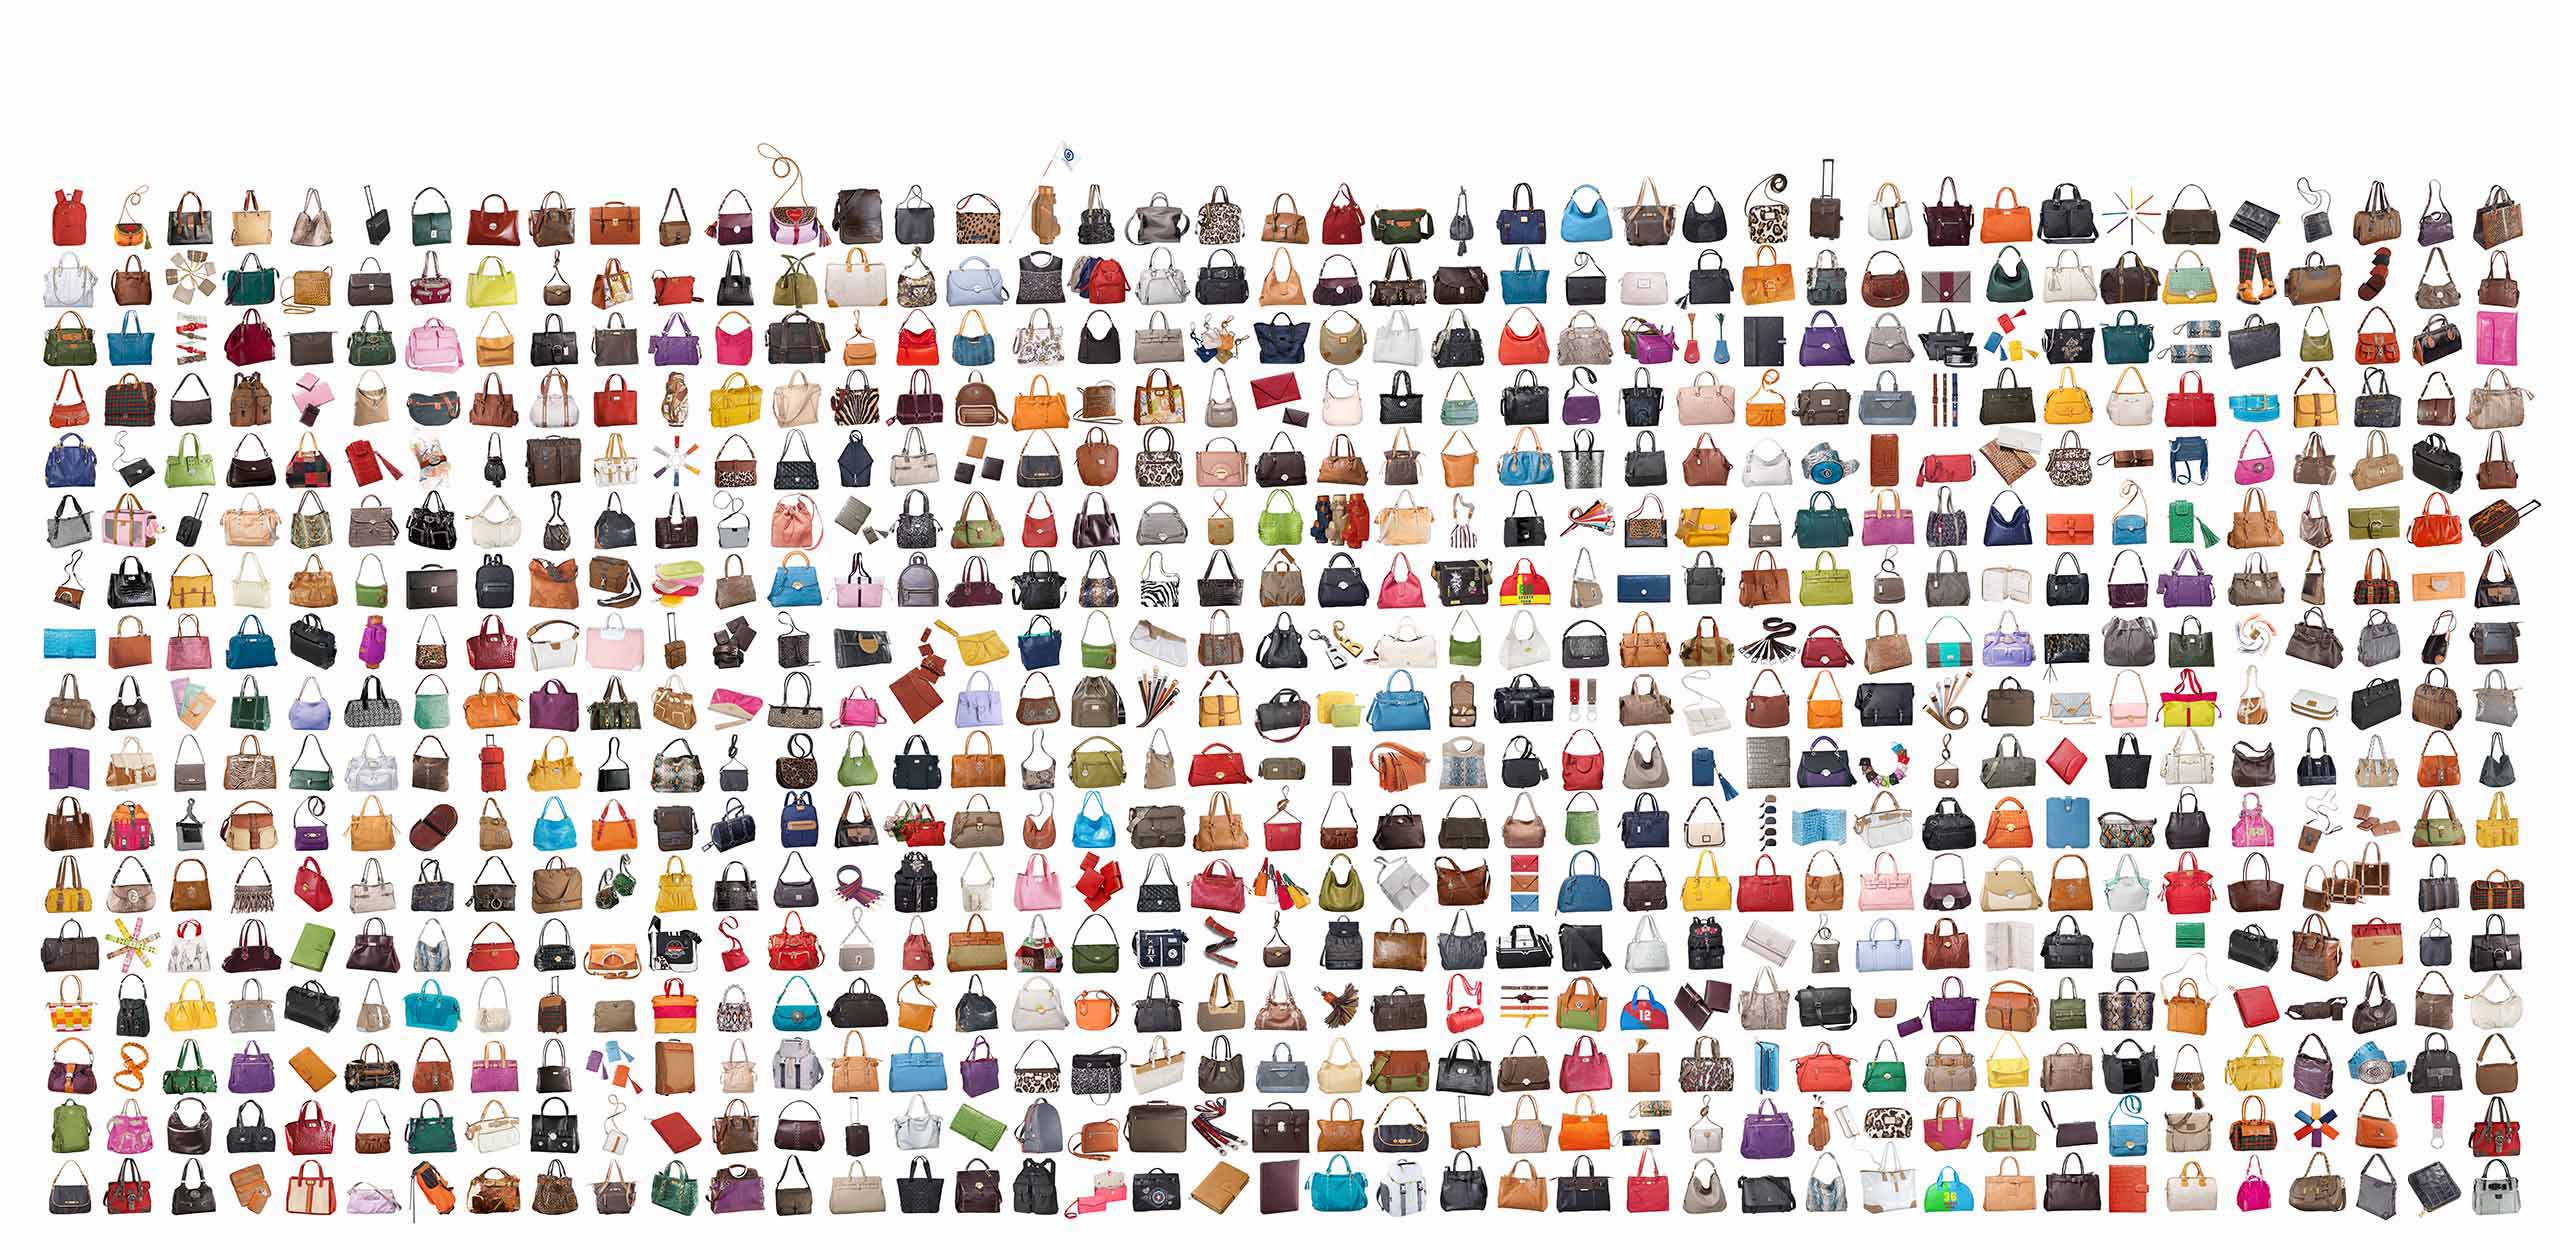 sehr viele Produktfotos von Handtaschen visualisiert als Bilderteppich